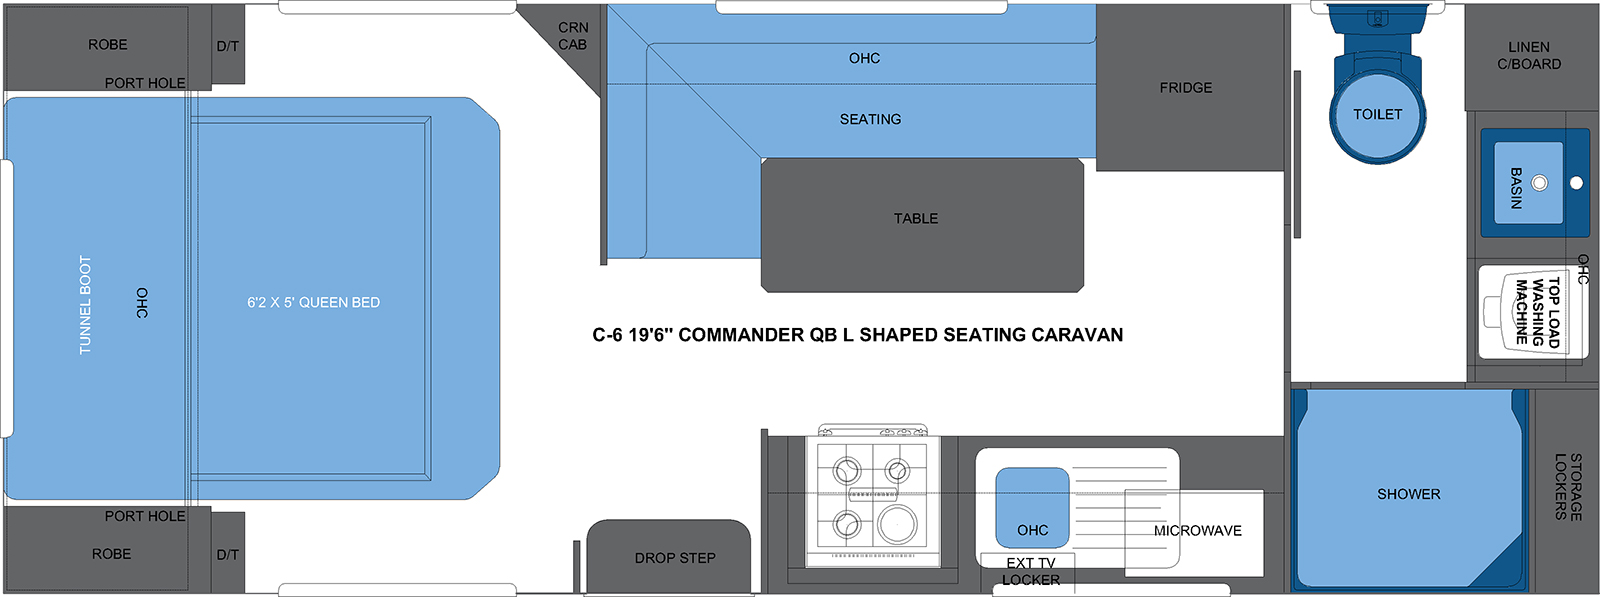 C-6 19'6 COMMANDER QB L SHAPED SEATING CARAVAN